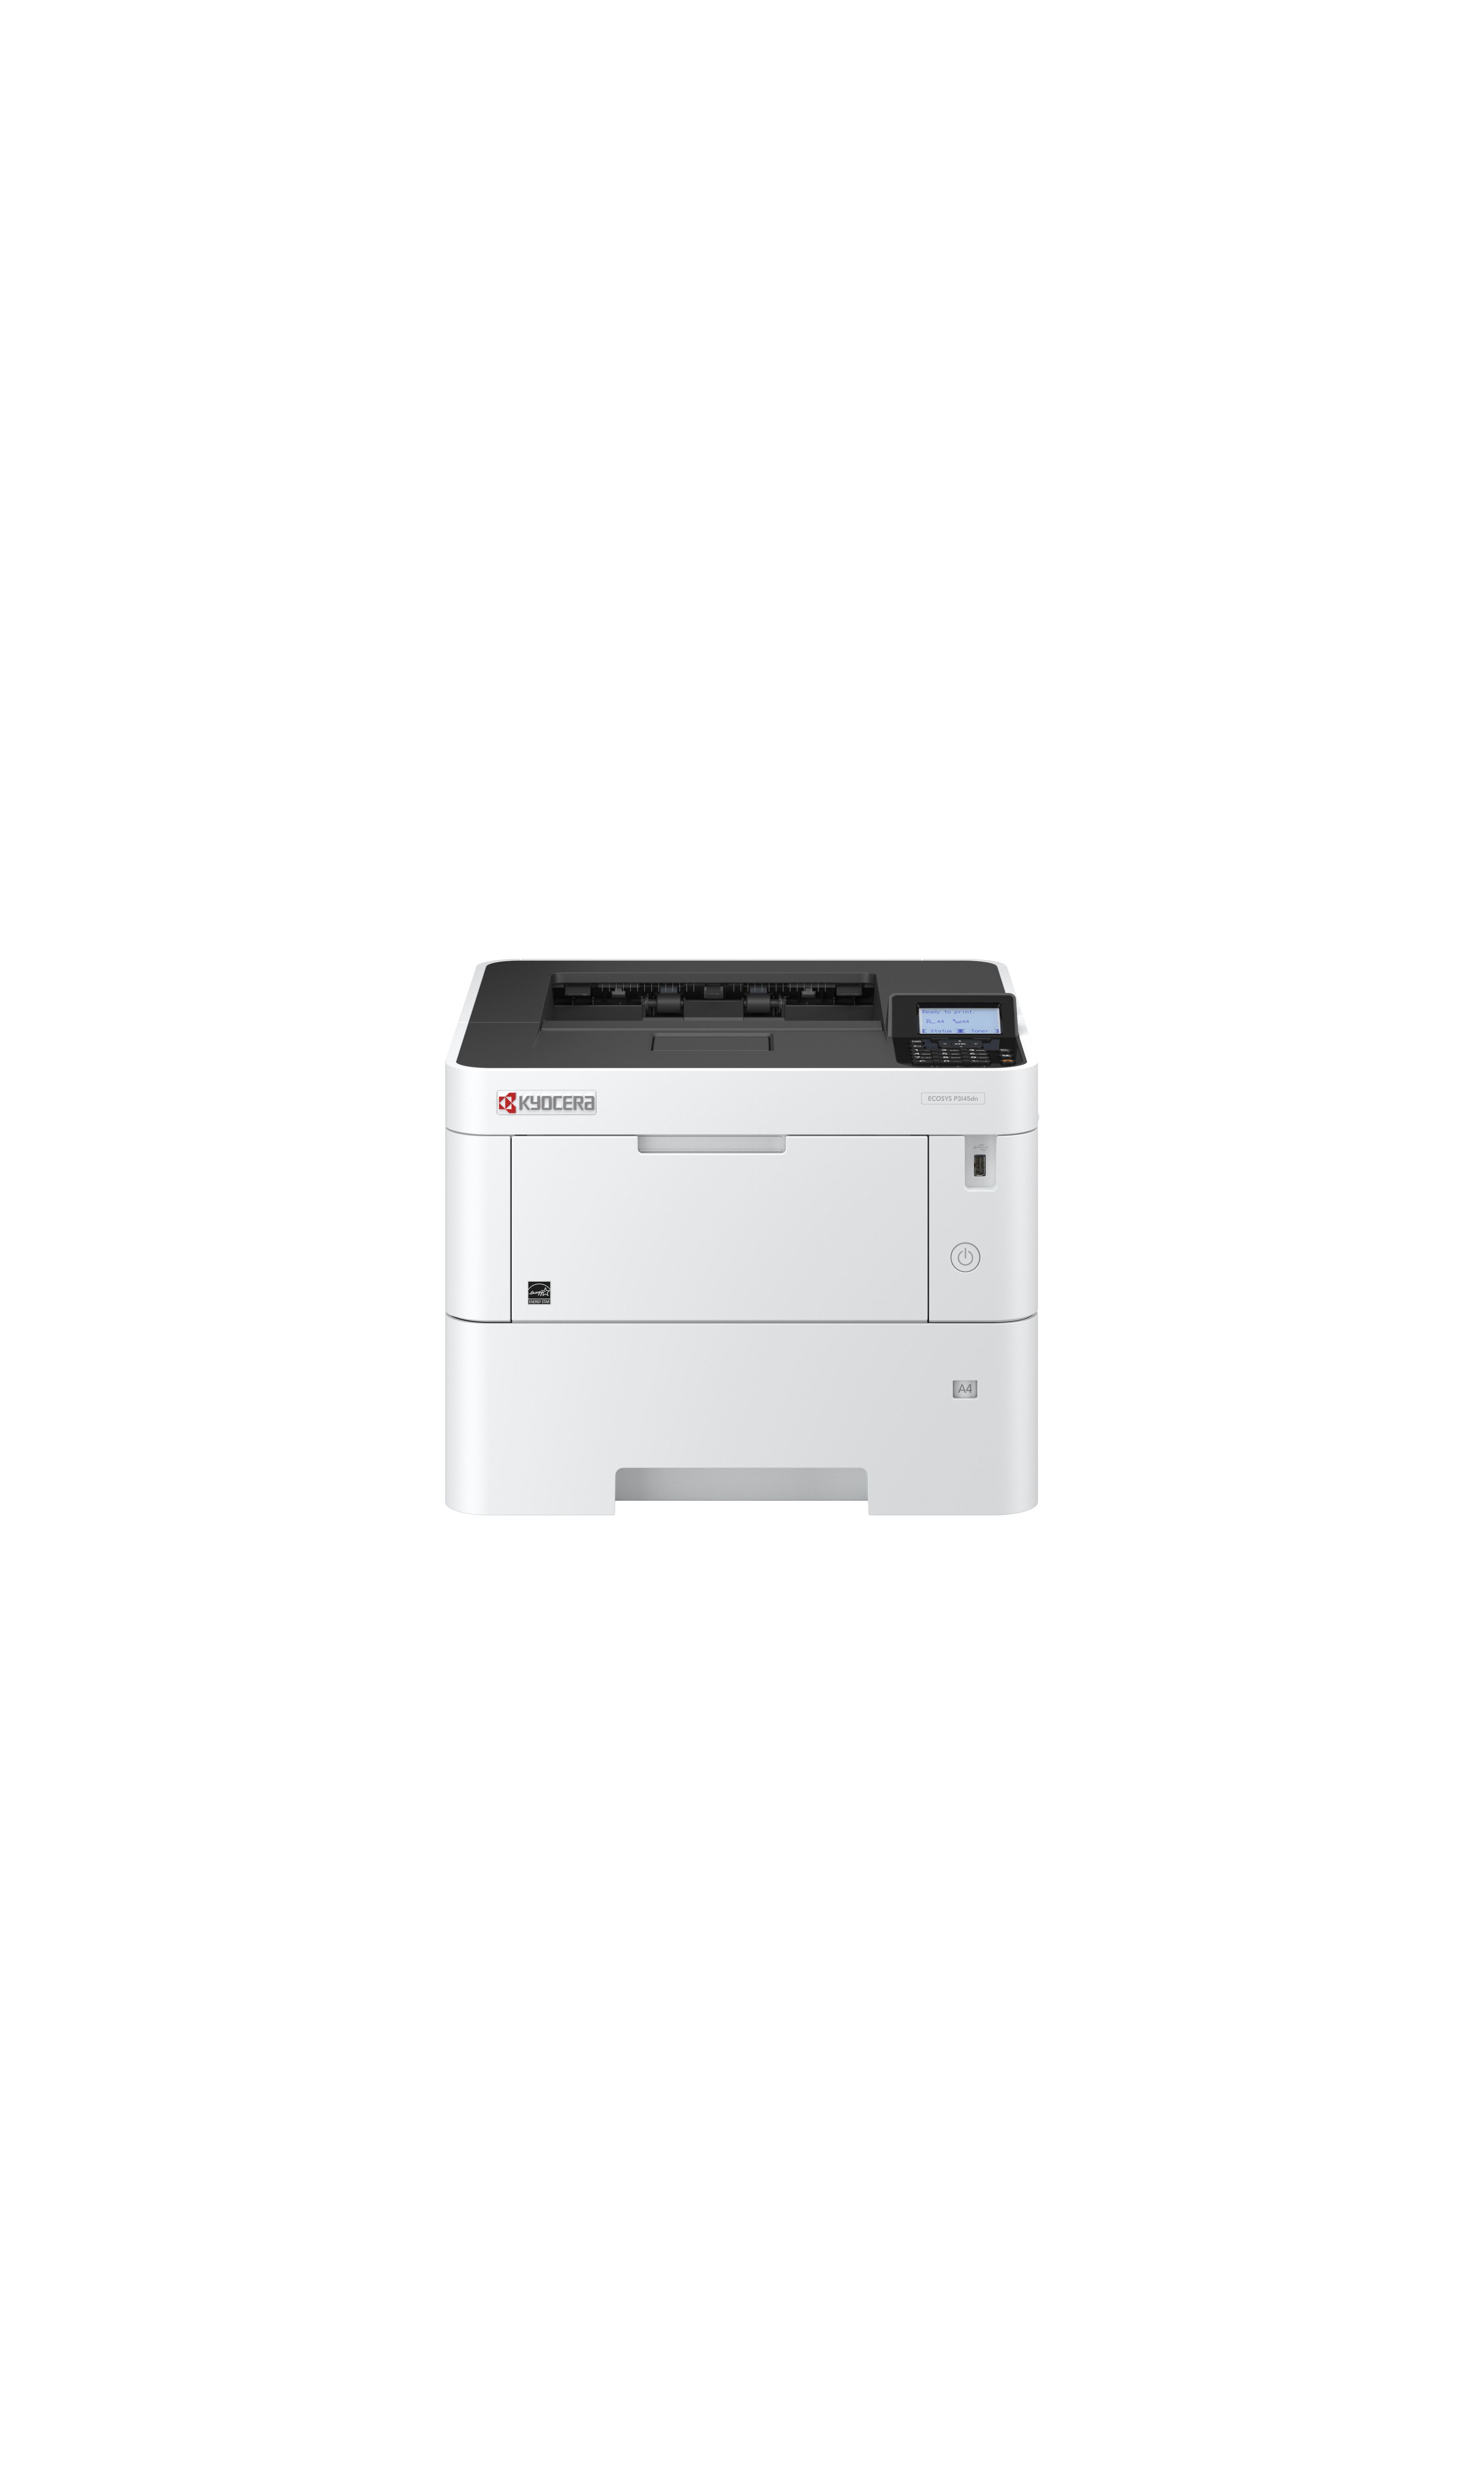 KYOCERA 870B61102TT3NL2 laser printer